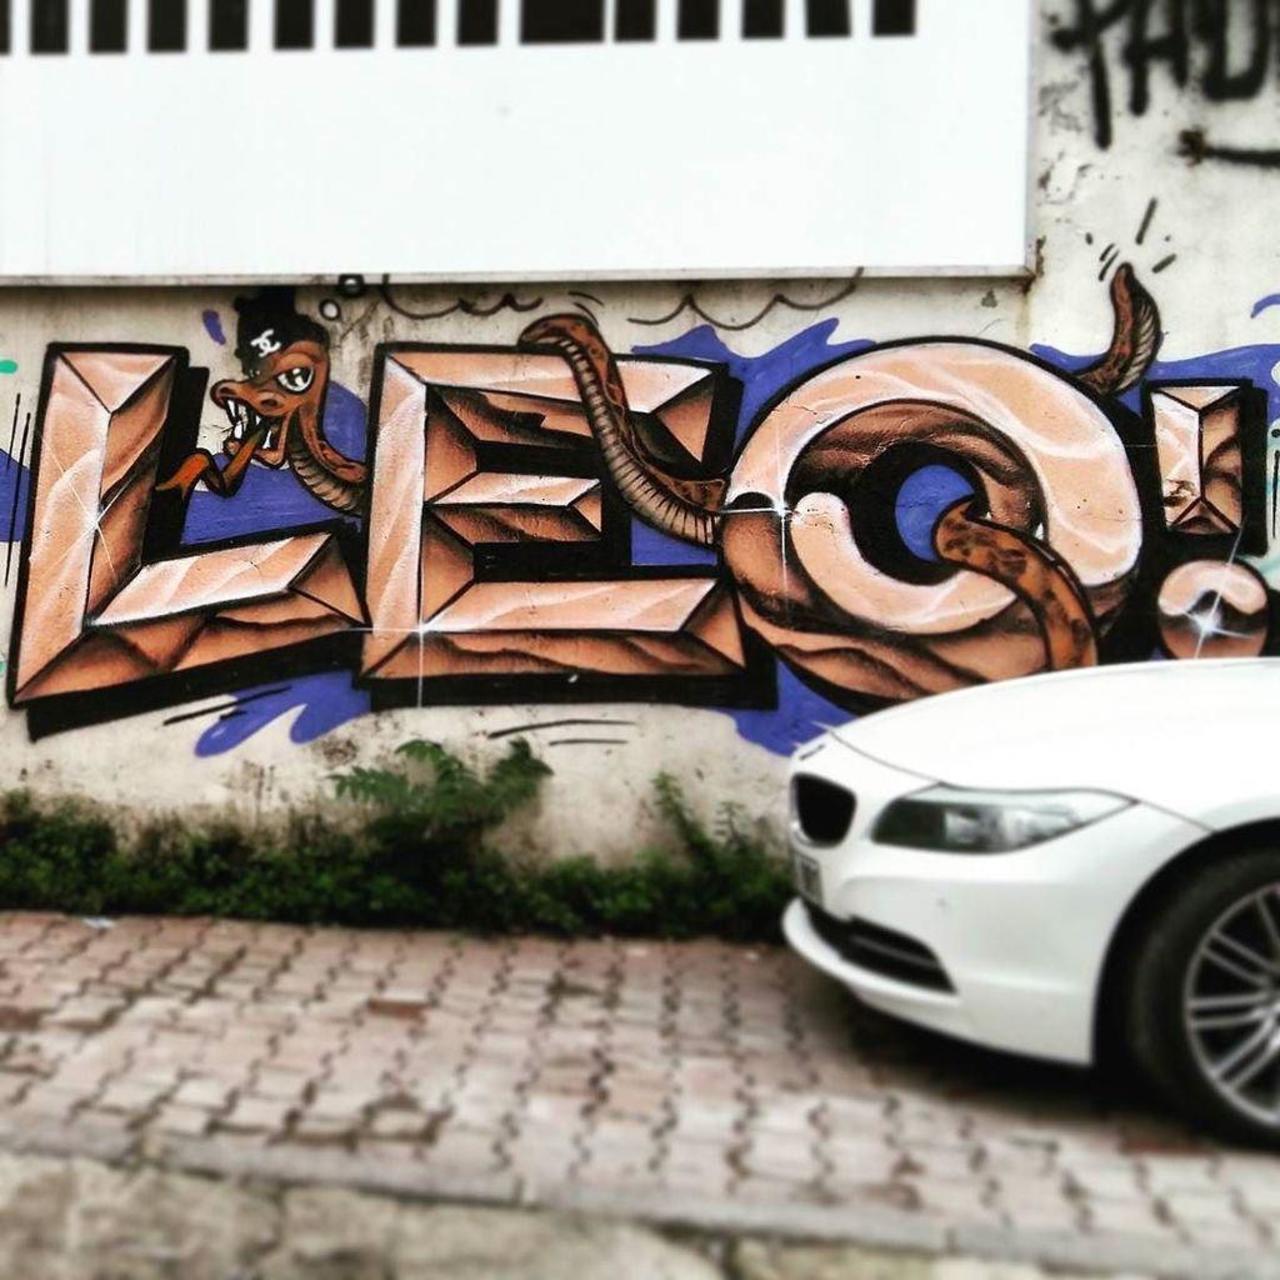 By @leolunatic @dsb_graff #dsb_graff @rsa_graffiti @streetawesome #streetart #urbanart #graffitiart #graffiti #stre… http://t.co/AmM05XSCpk